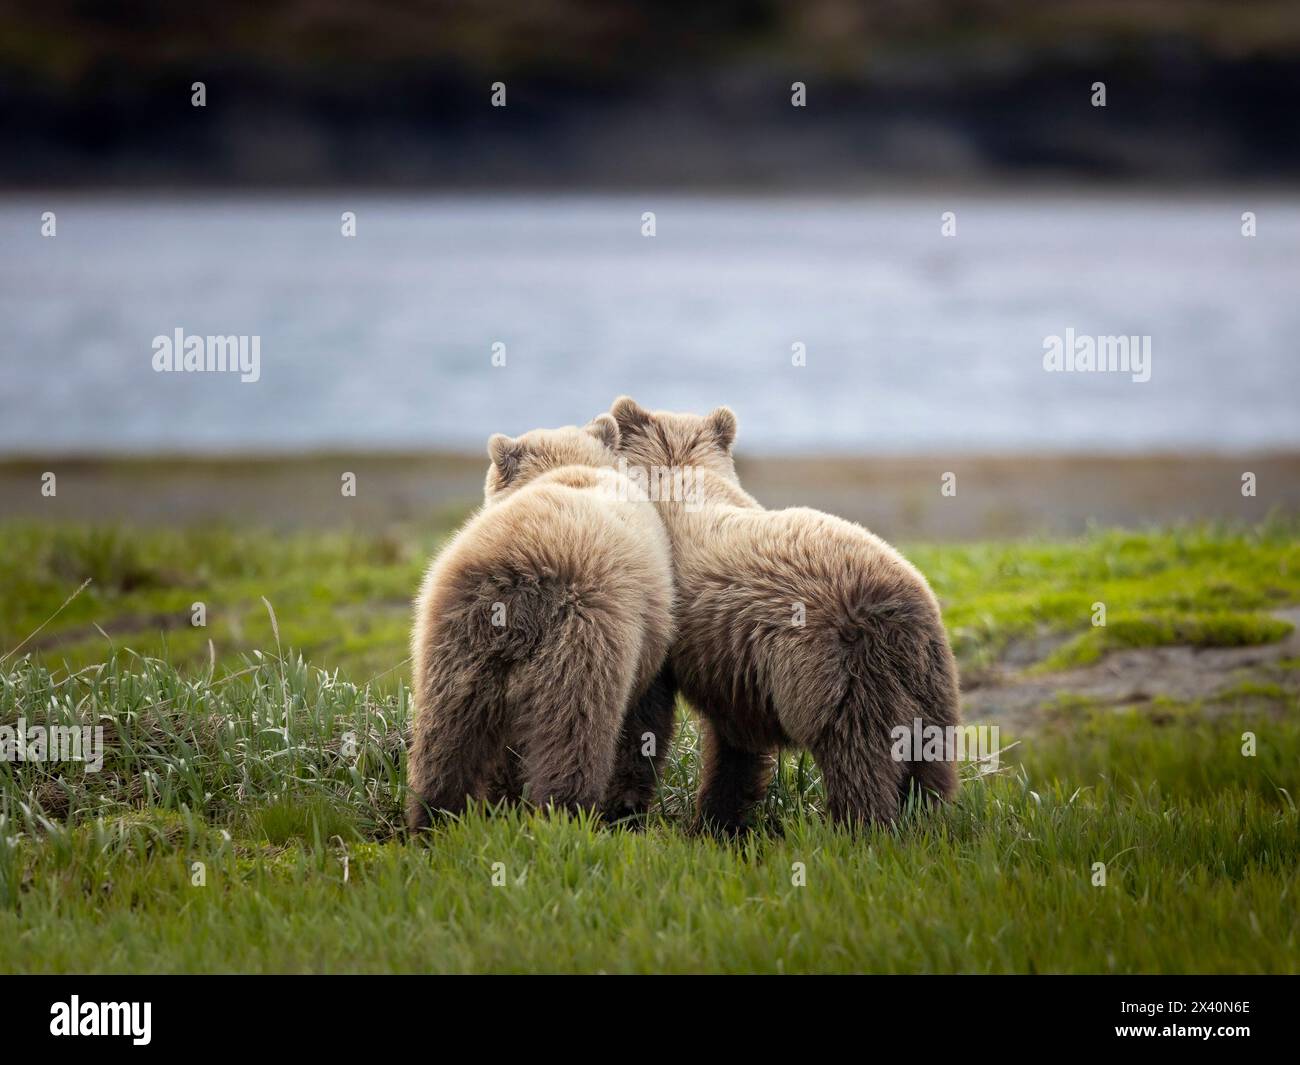 Yearling Brown Bear frères et sœurs (Ursus arctos) prennent une pause dans le rughhousing près de McNeil River, Alaska, tandis que leur mère se nourrit de sedges à proximité. BR... Banque D'Images